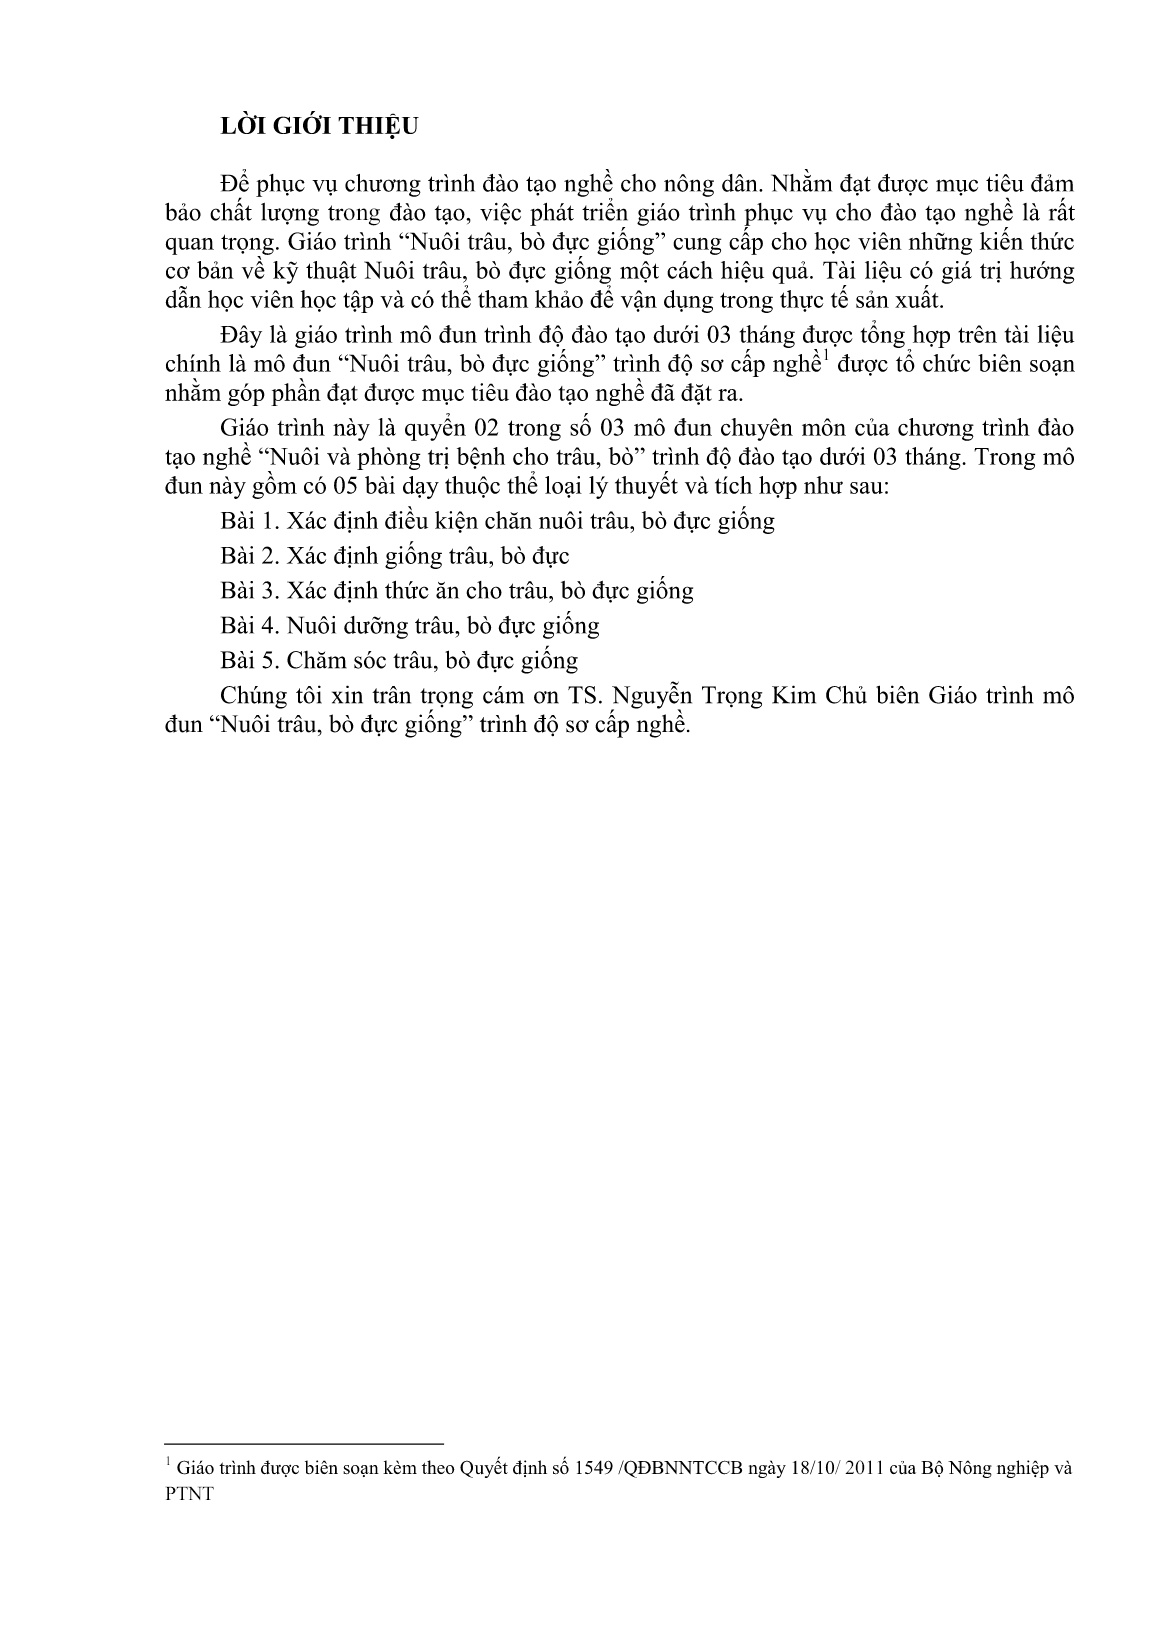 Giáo trình mô đun Nuôi trâu, bò đực giống (Trình độ: Đào tạo dưới 3 tháng) trang 2